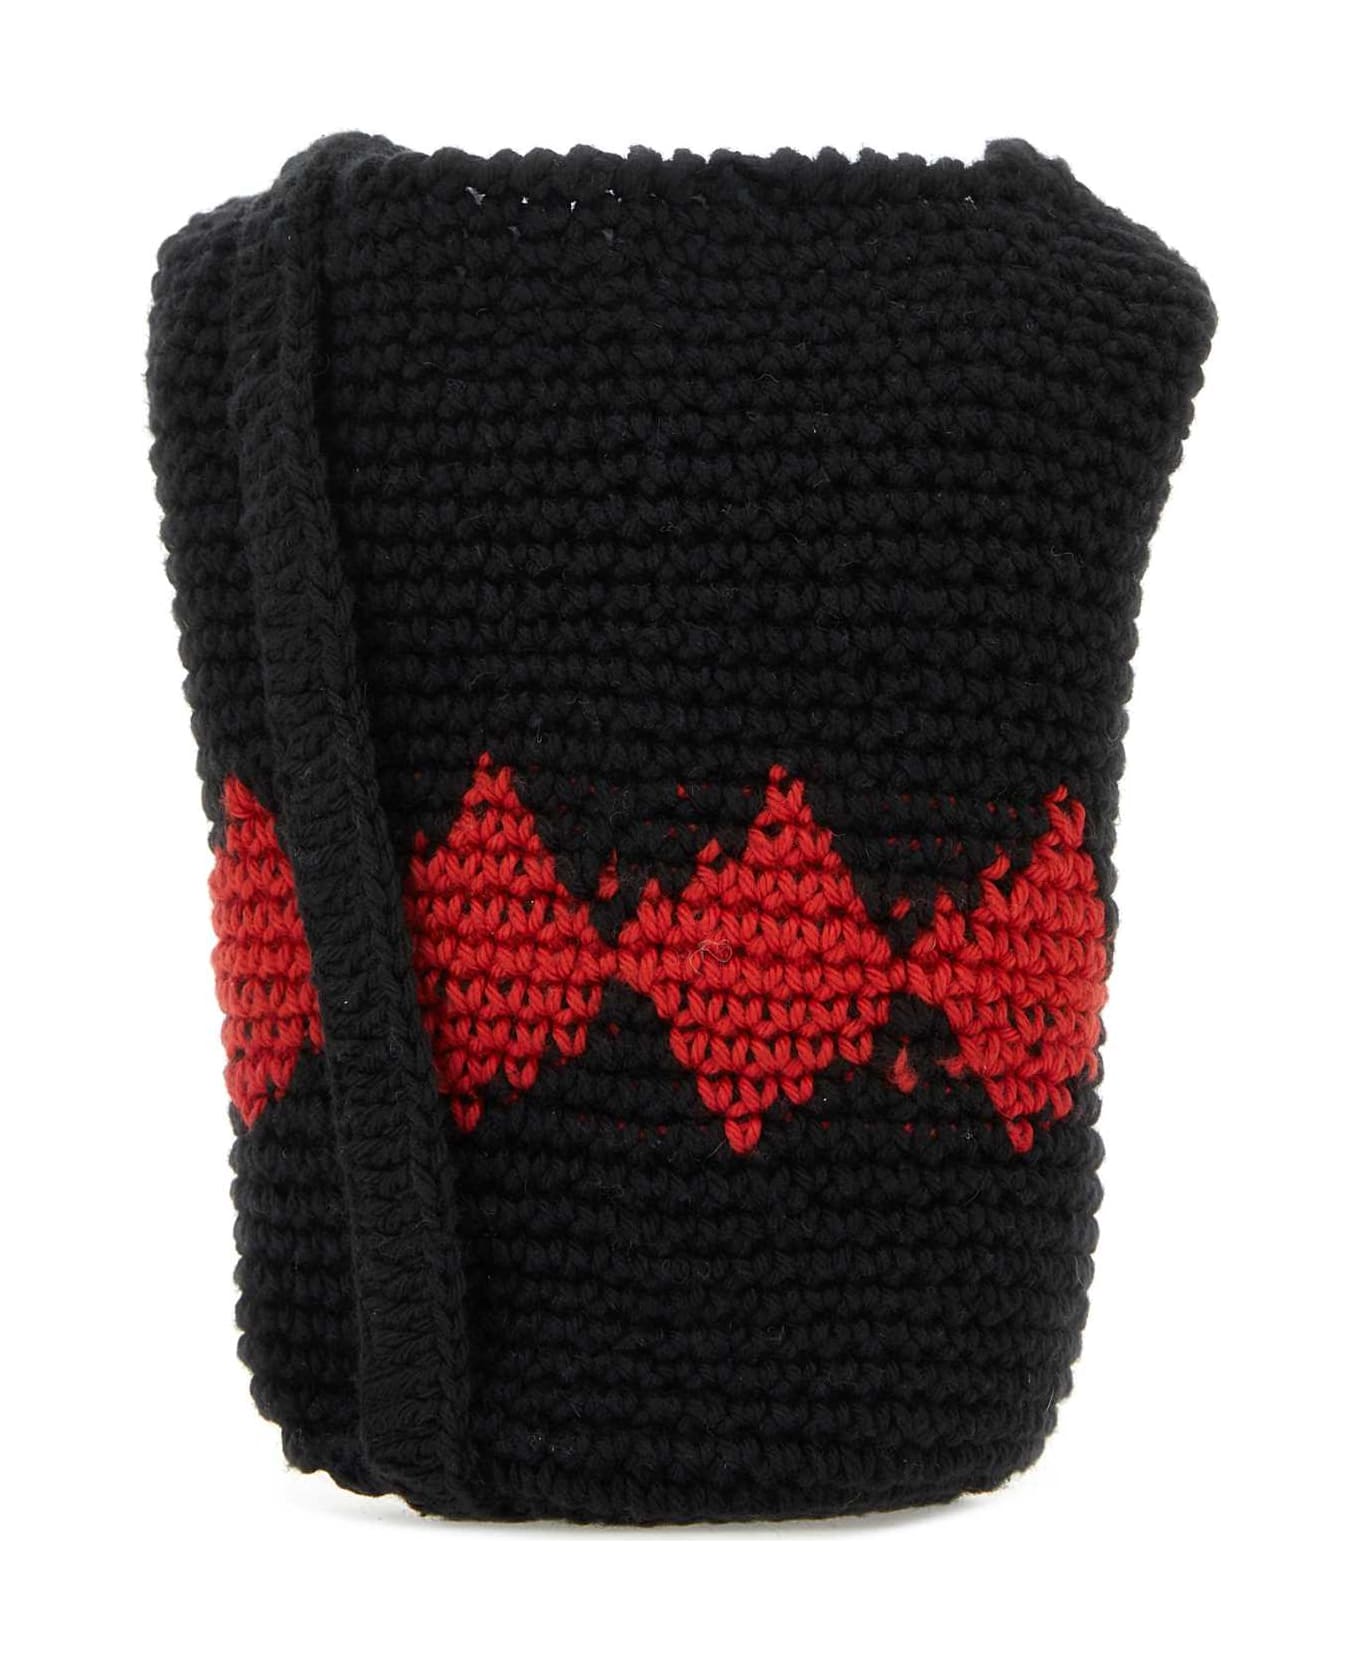 Gimaguas Black Crochet Rombo Crossbody Bag - BLACK